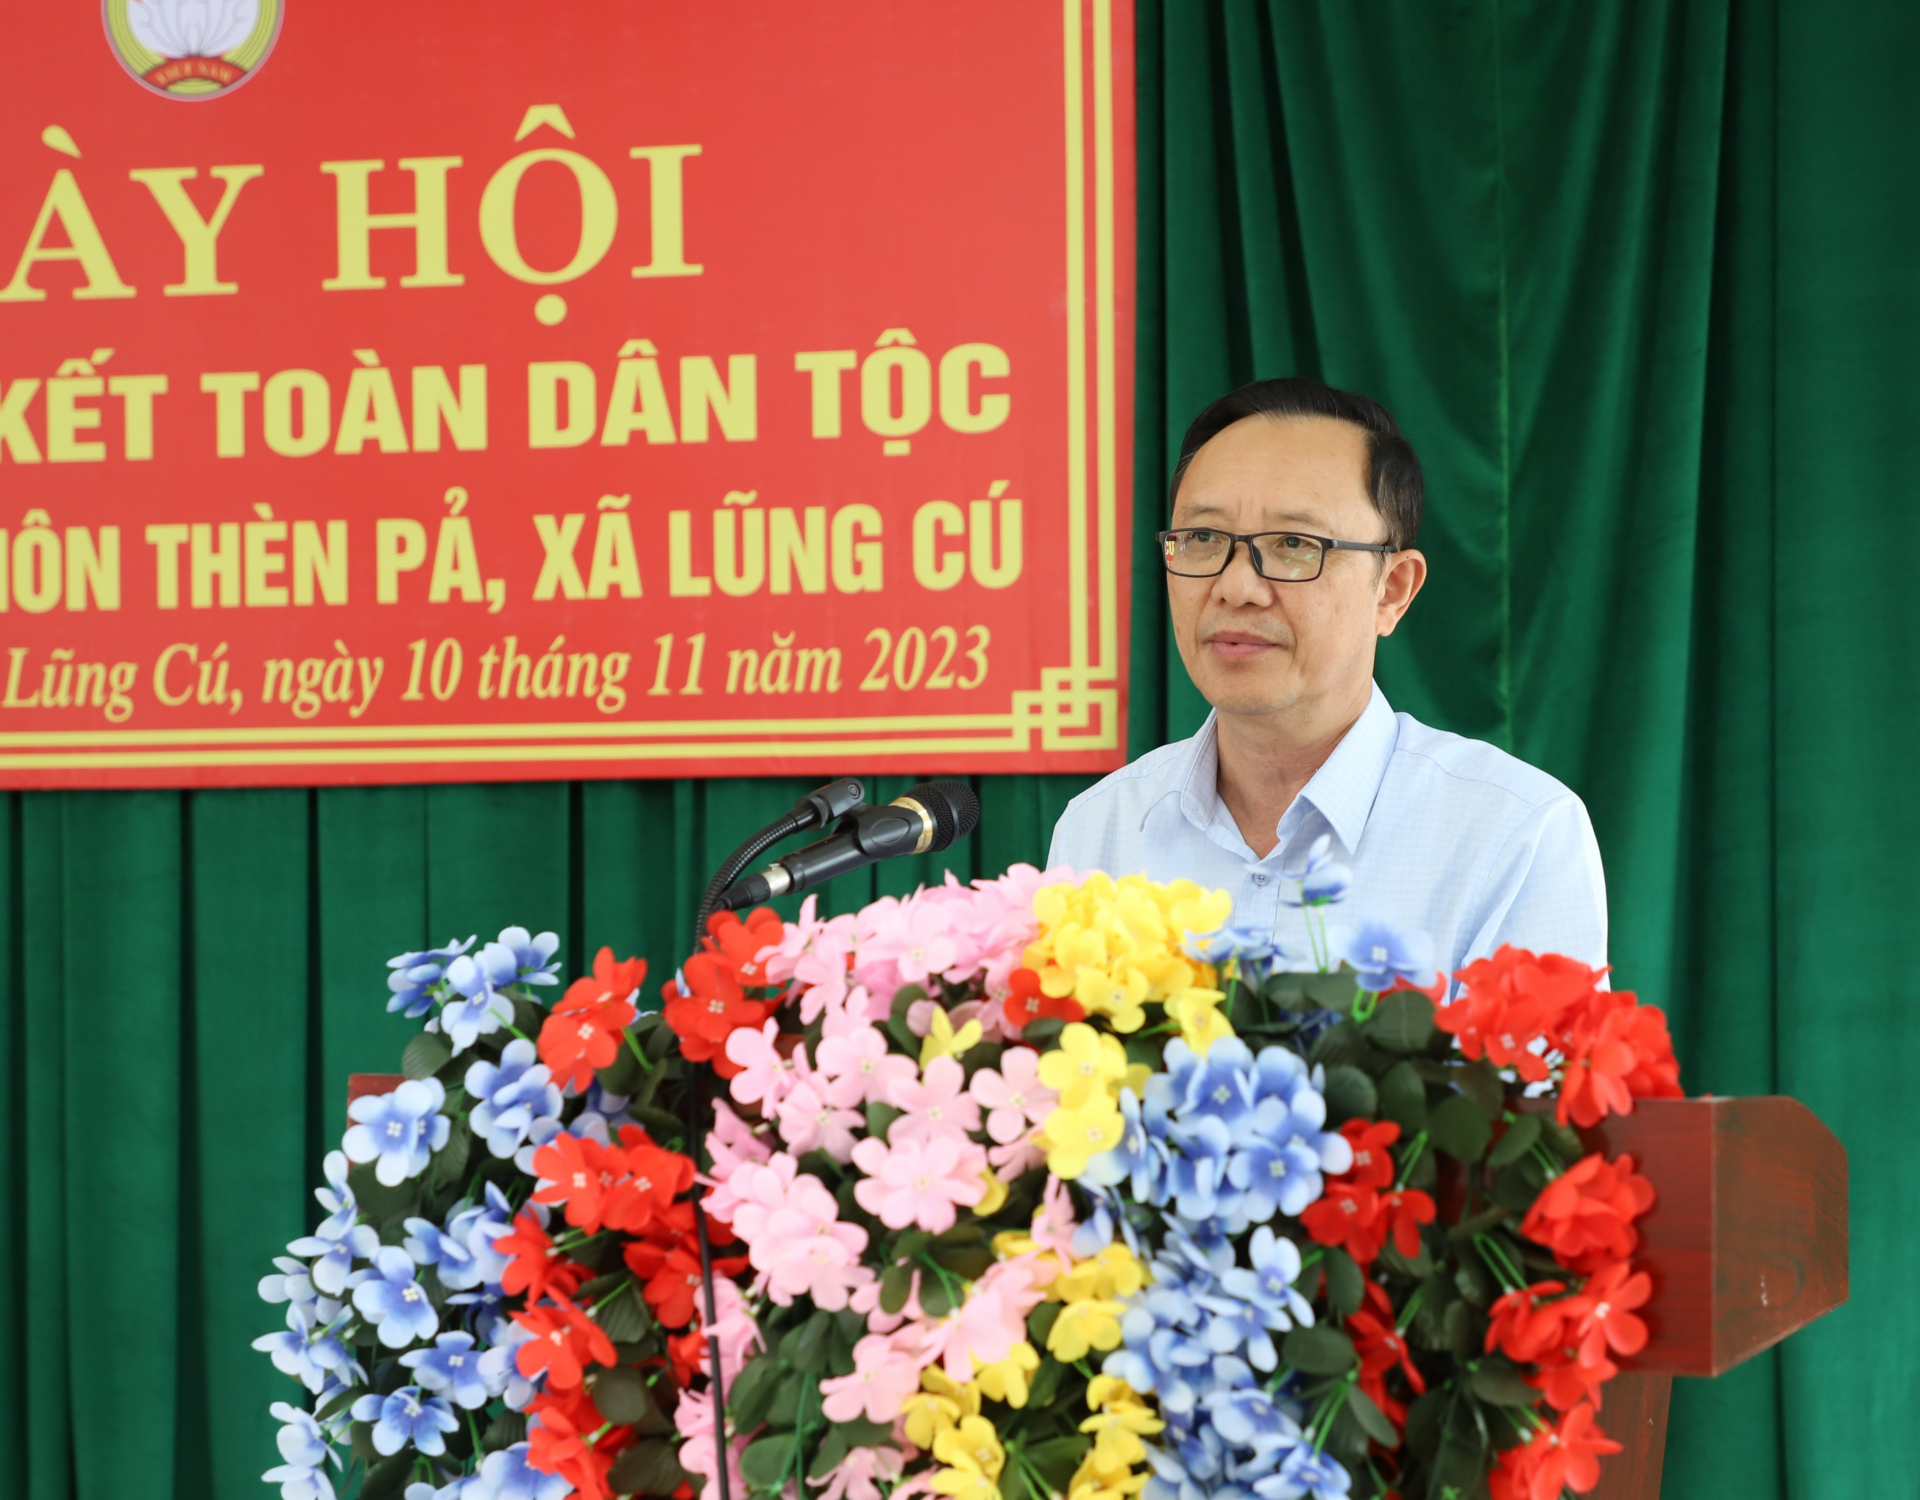 Phó Bí thư Thường trực Tỉnh ủy, Chủ tịch HĐND tỉnh Thào Hồng Sơn phát biểu tại Ngày hội